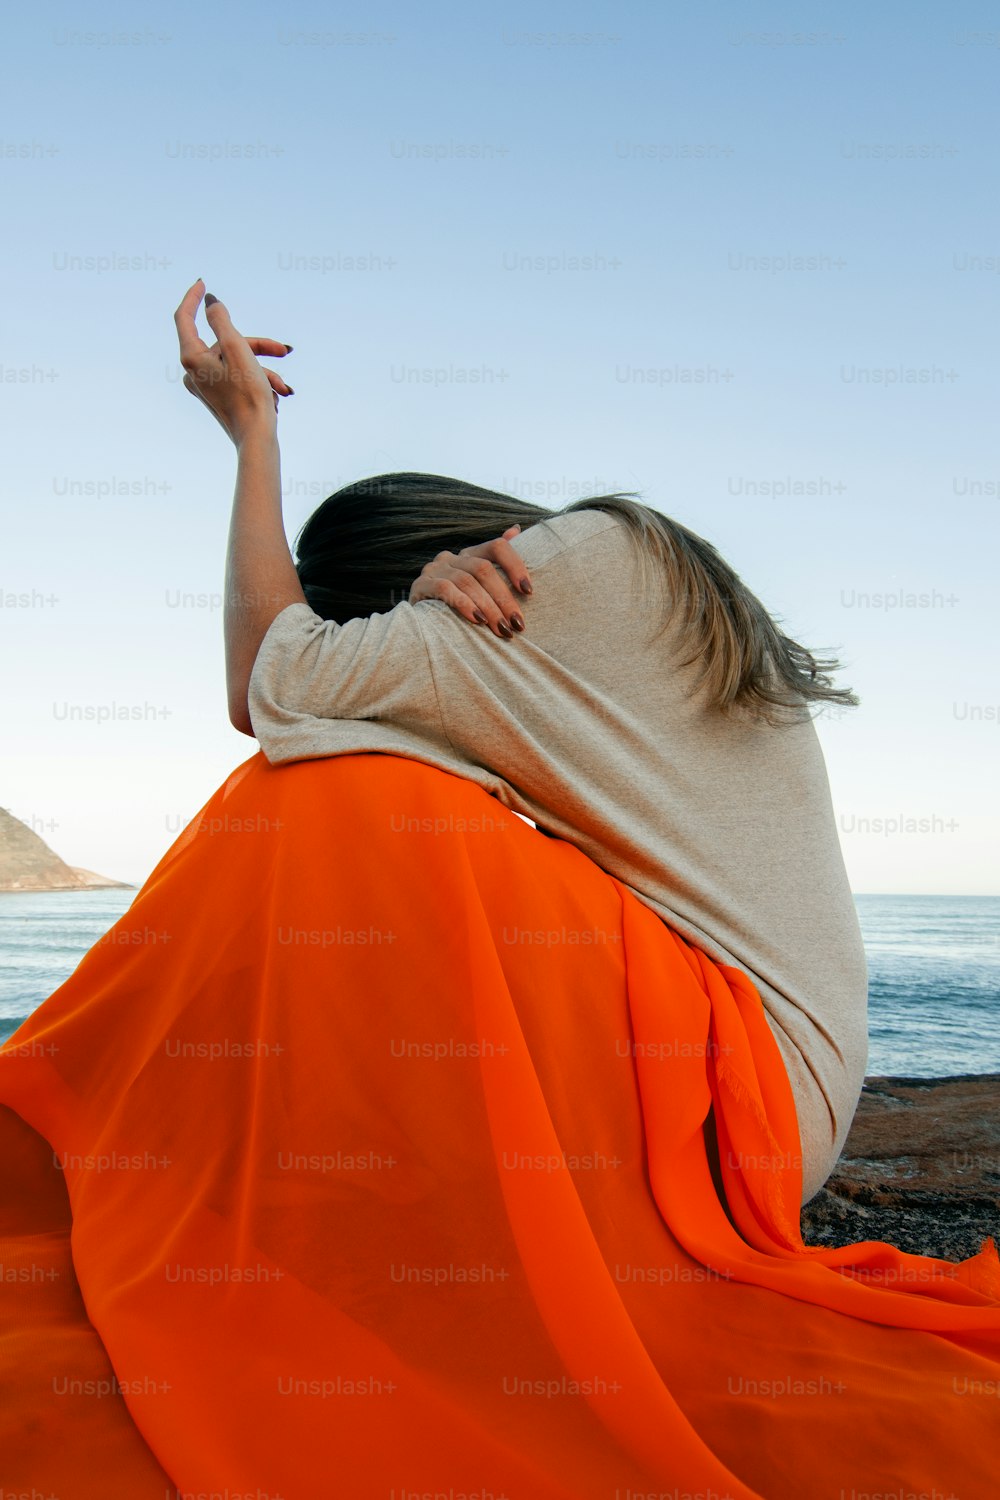 주황색 드레스를 입은 여자가 해변에 앉��아 있다